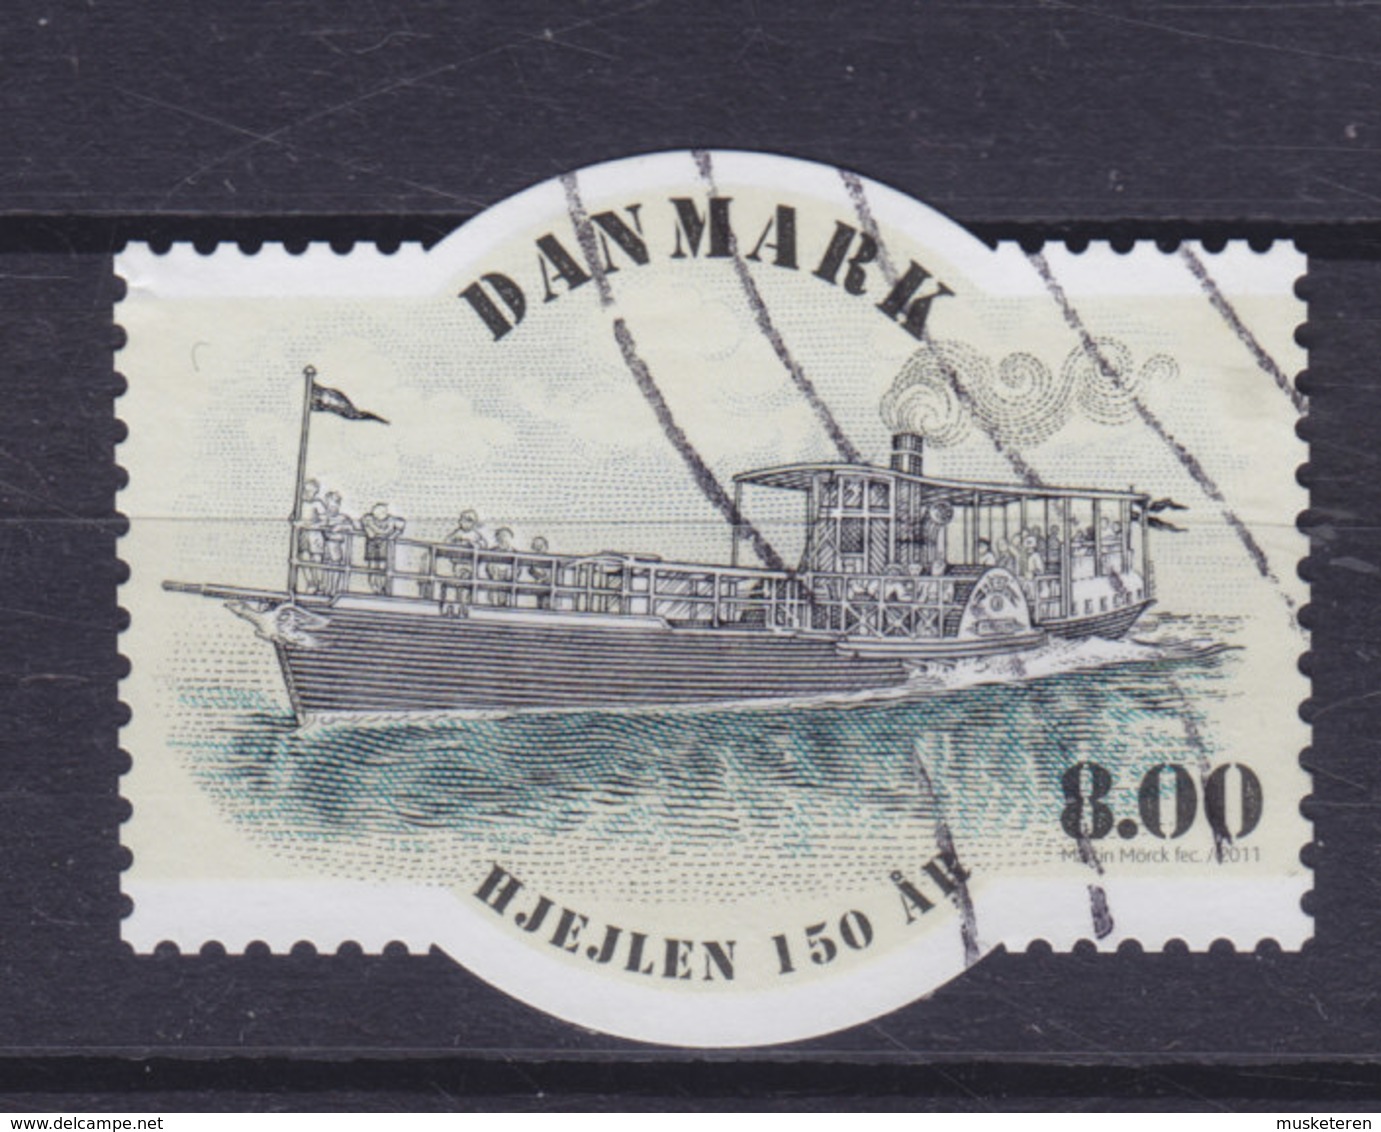 Denmark 2011 Mi. 1660   8.00 Kr. Schiff Ship "Hjejlen" 150 Year Anniversary - Gebruikt